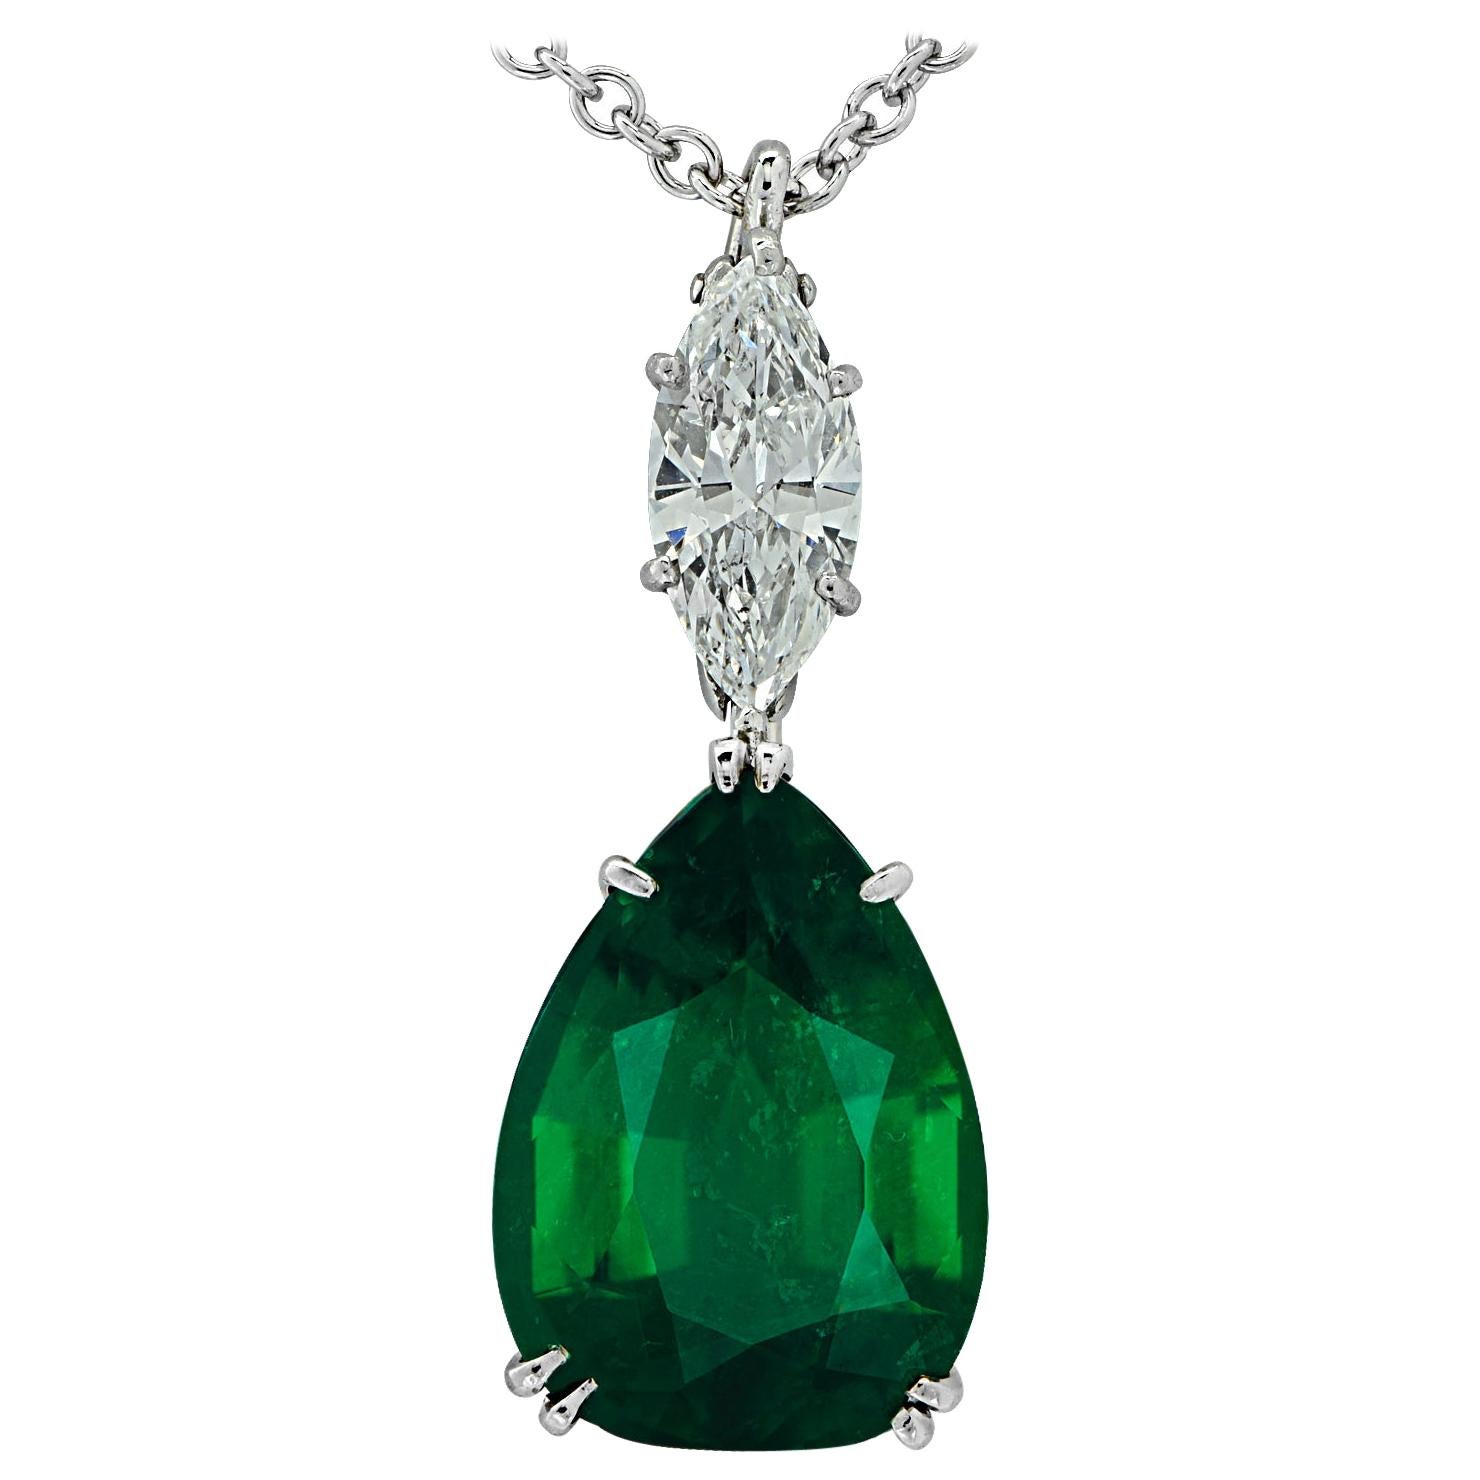 Vivid Diamonds AGL Certified 6.54 Carat Emerald and Diamond Necklace